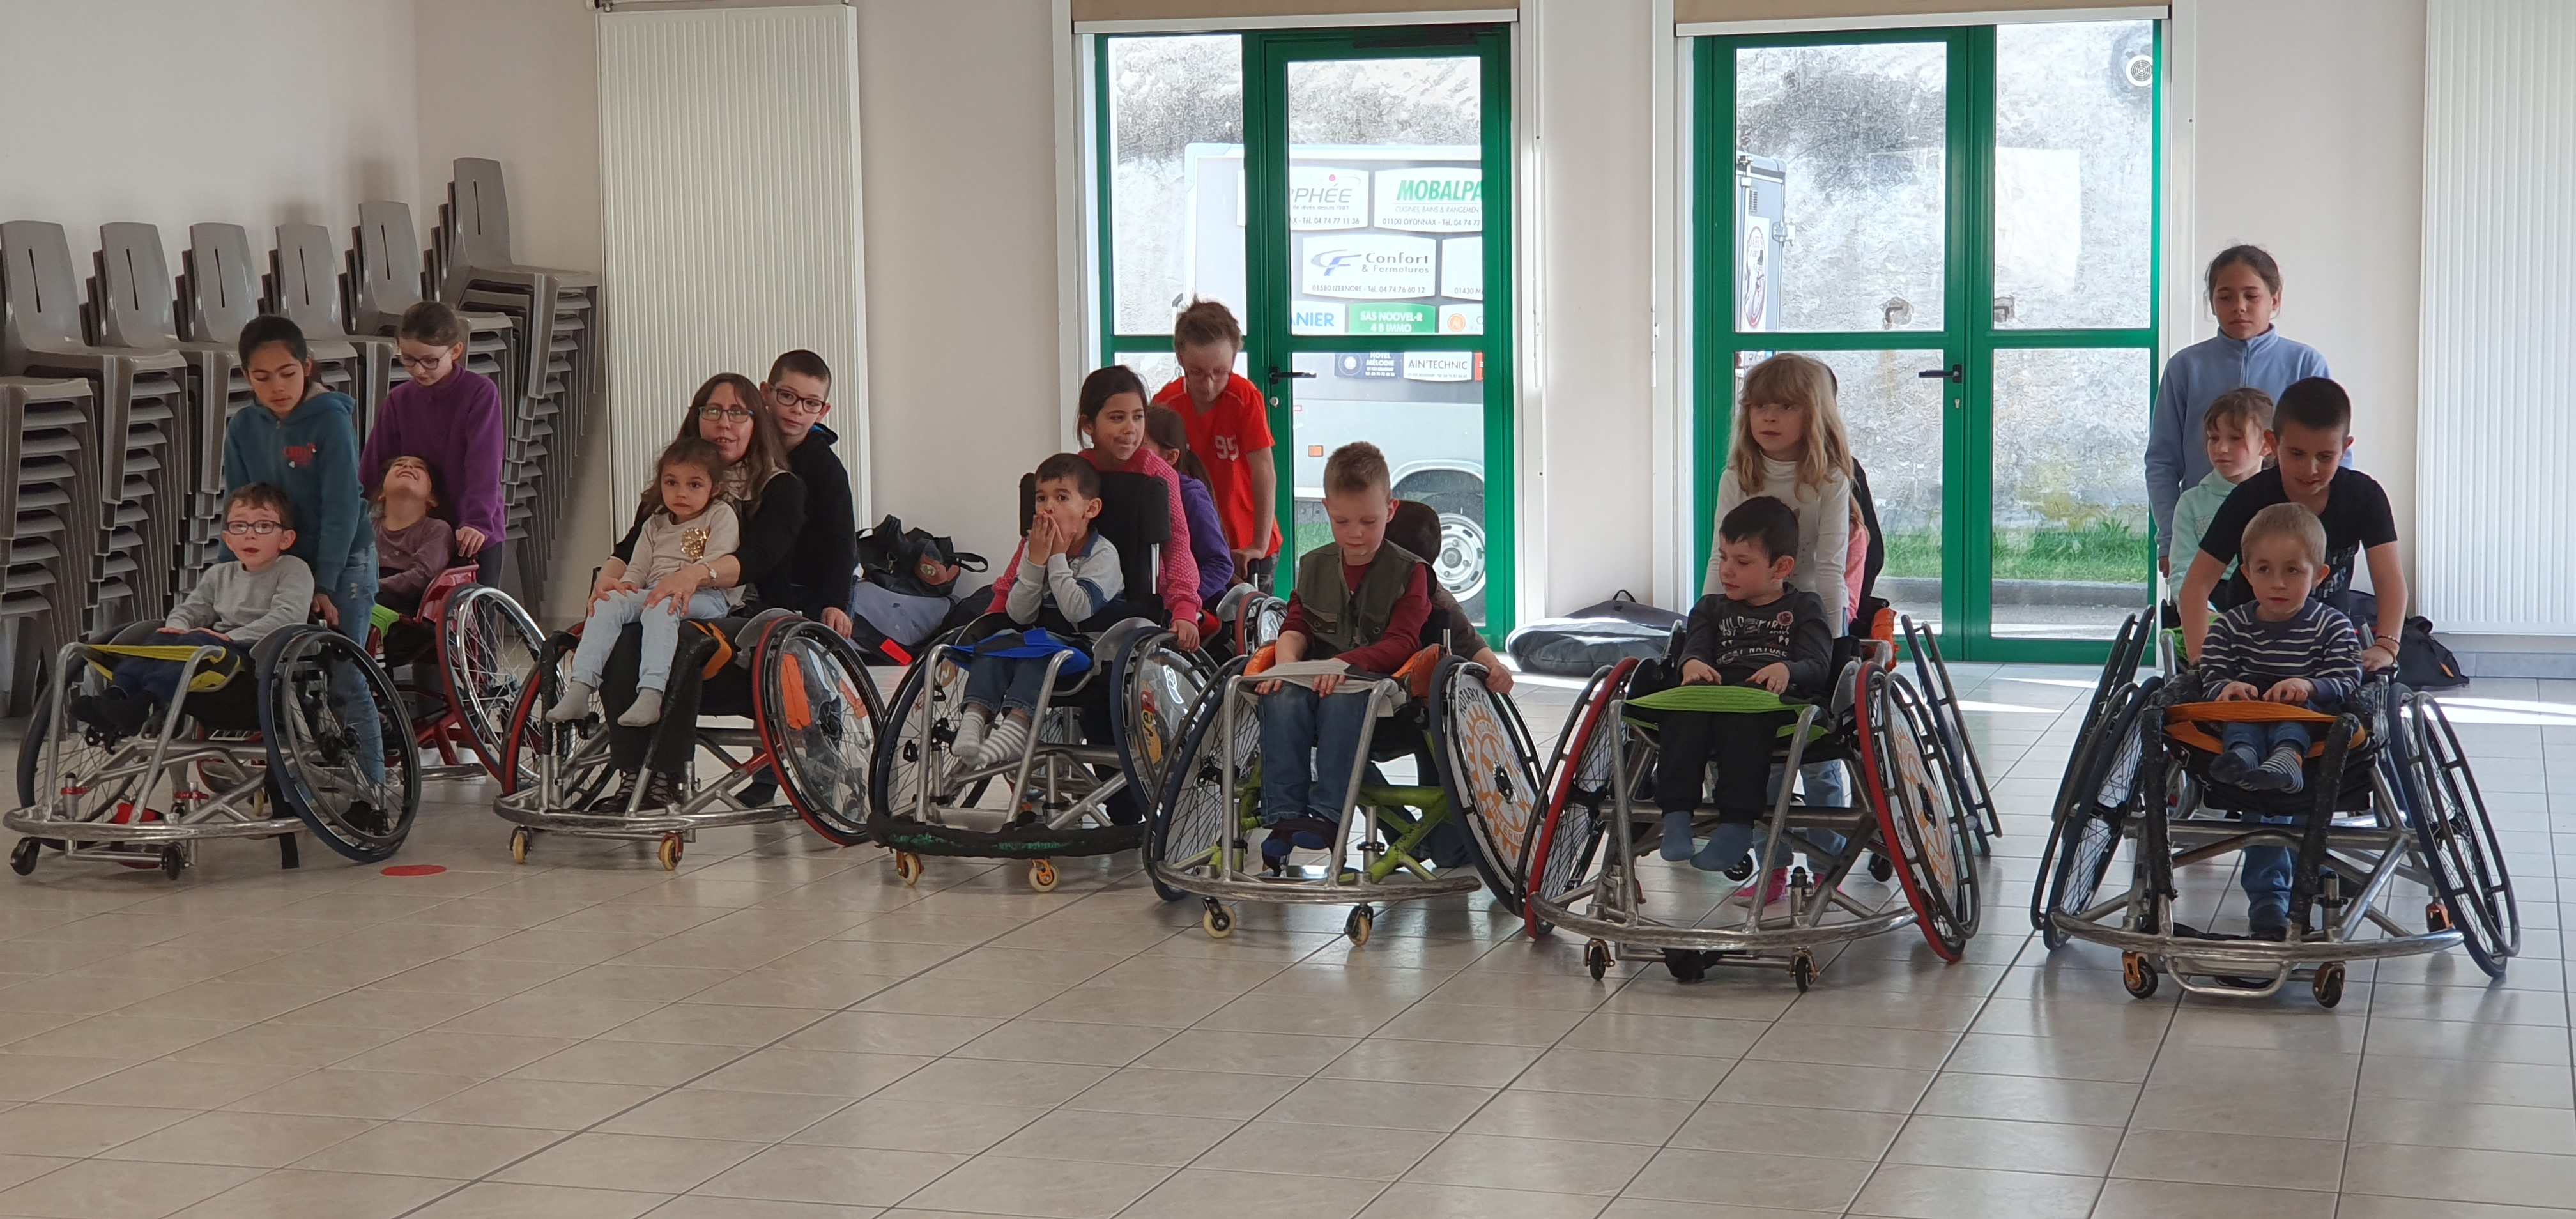 C’est un groupe d’enfants qui lors d’une animation autour du handicap s’essaye à la pratique du rugby fauteuil 